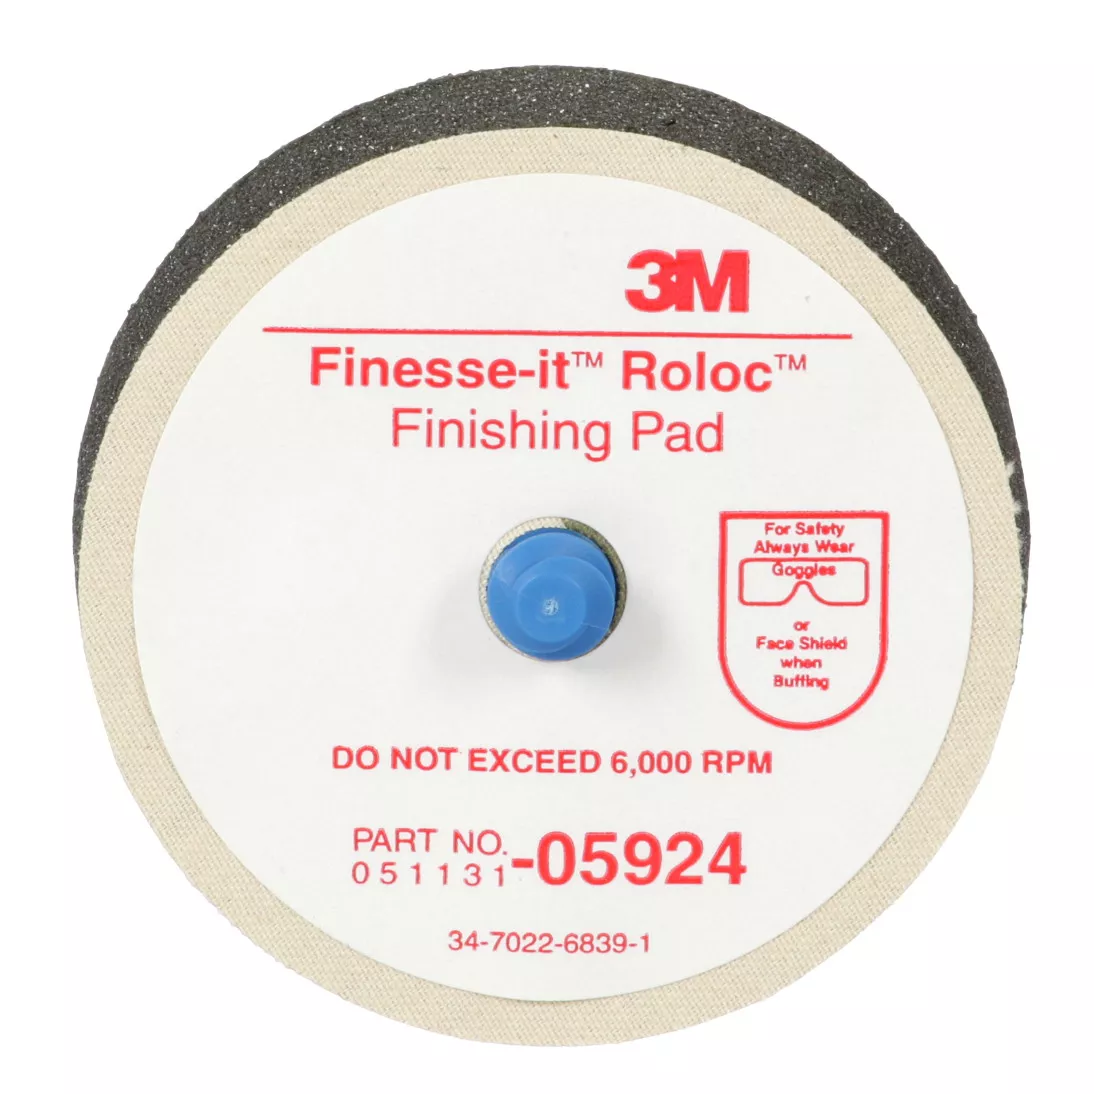 3M™ Finesse-it™ Roloc™ Finishing Pad, 05924, 3 in, 12 per bag, 5 bags
per case